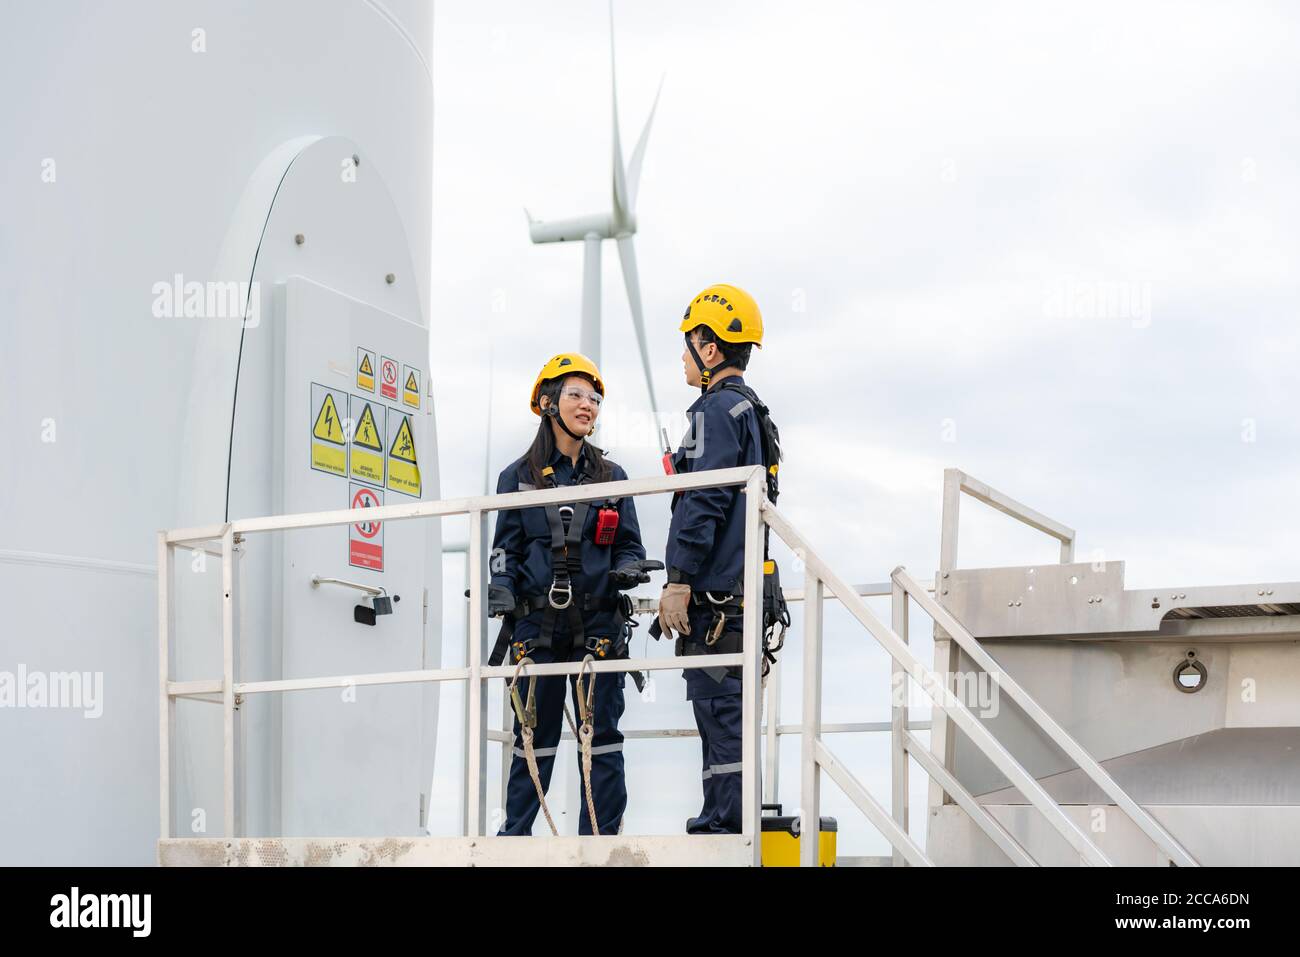 Homme et femme asiatiques ingénieurs d'inspection préparant et faisant le contrôle d'avancement d'une éolienne avec sécurité dans un parc éolien en Thaïlande. Banque D'Images